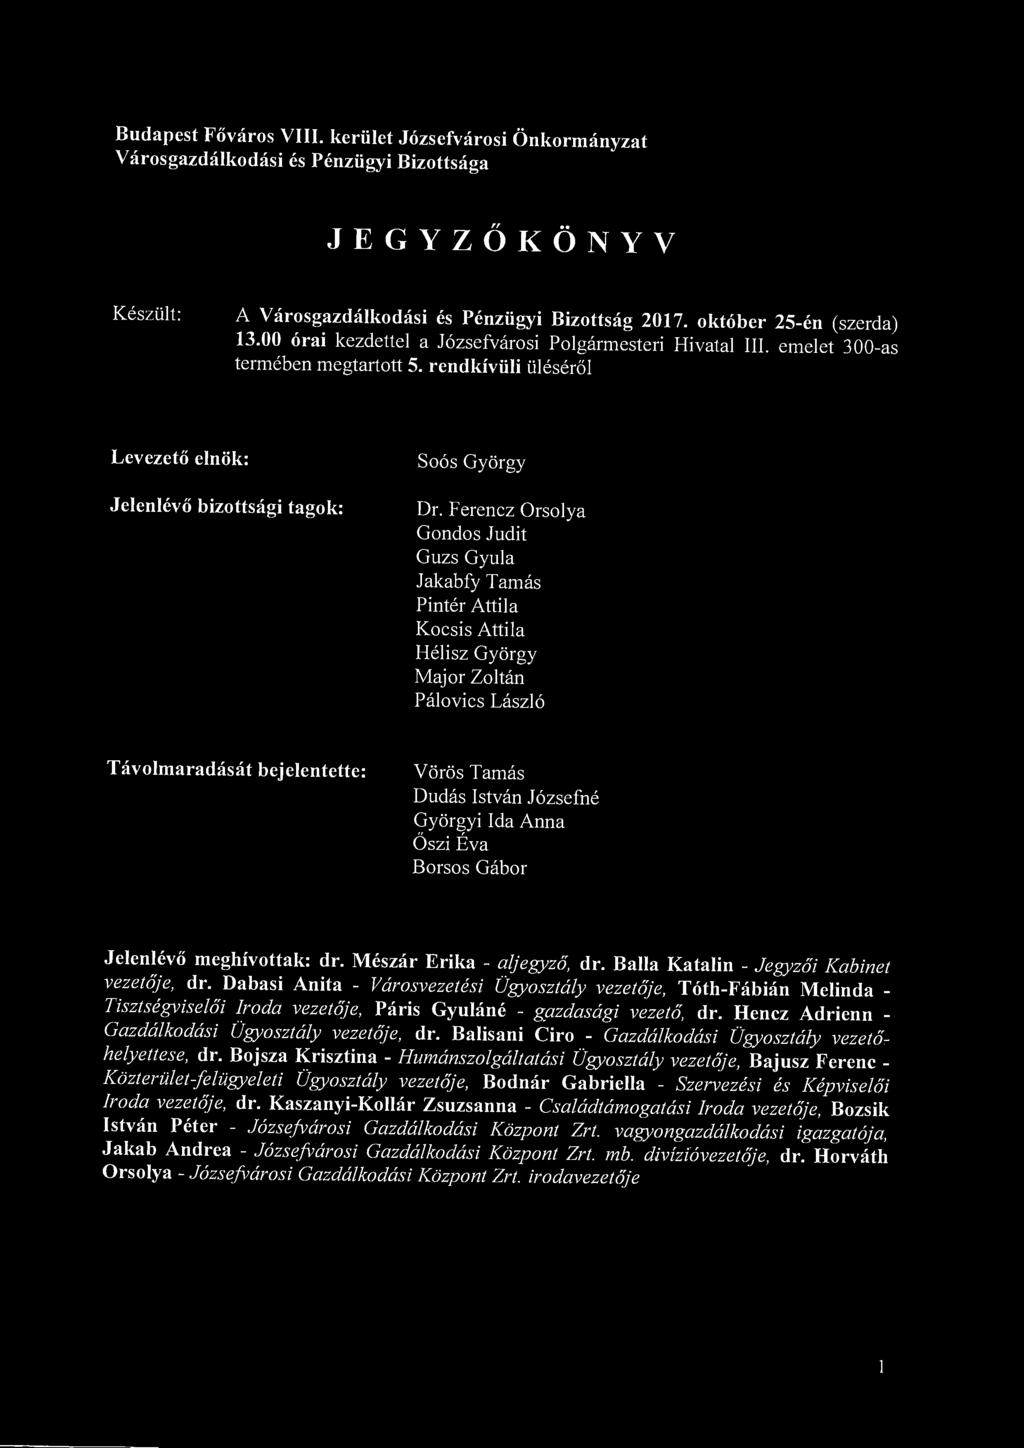 Budapest Főváros VIII. kerület Józsefvárosi Önkormányzat Városgazdálkodási és Pénzügyi Bizottsága JEGYZŐKÖNYV Készült: A Városgazdálkodási és Pénzügyi Bizottság 2017. október 25-én (szerda) 13.